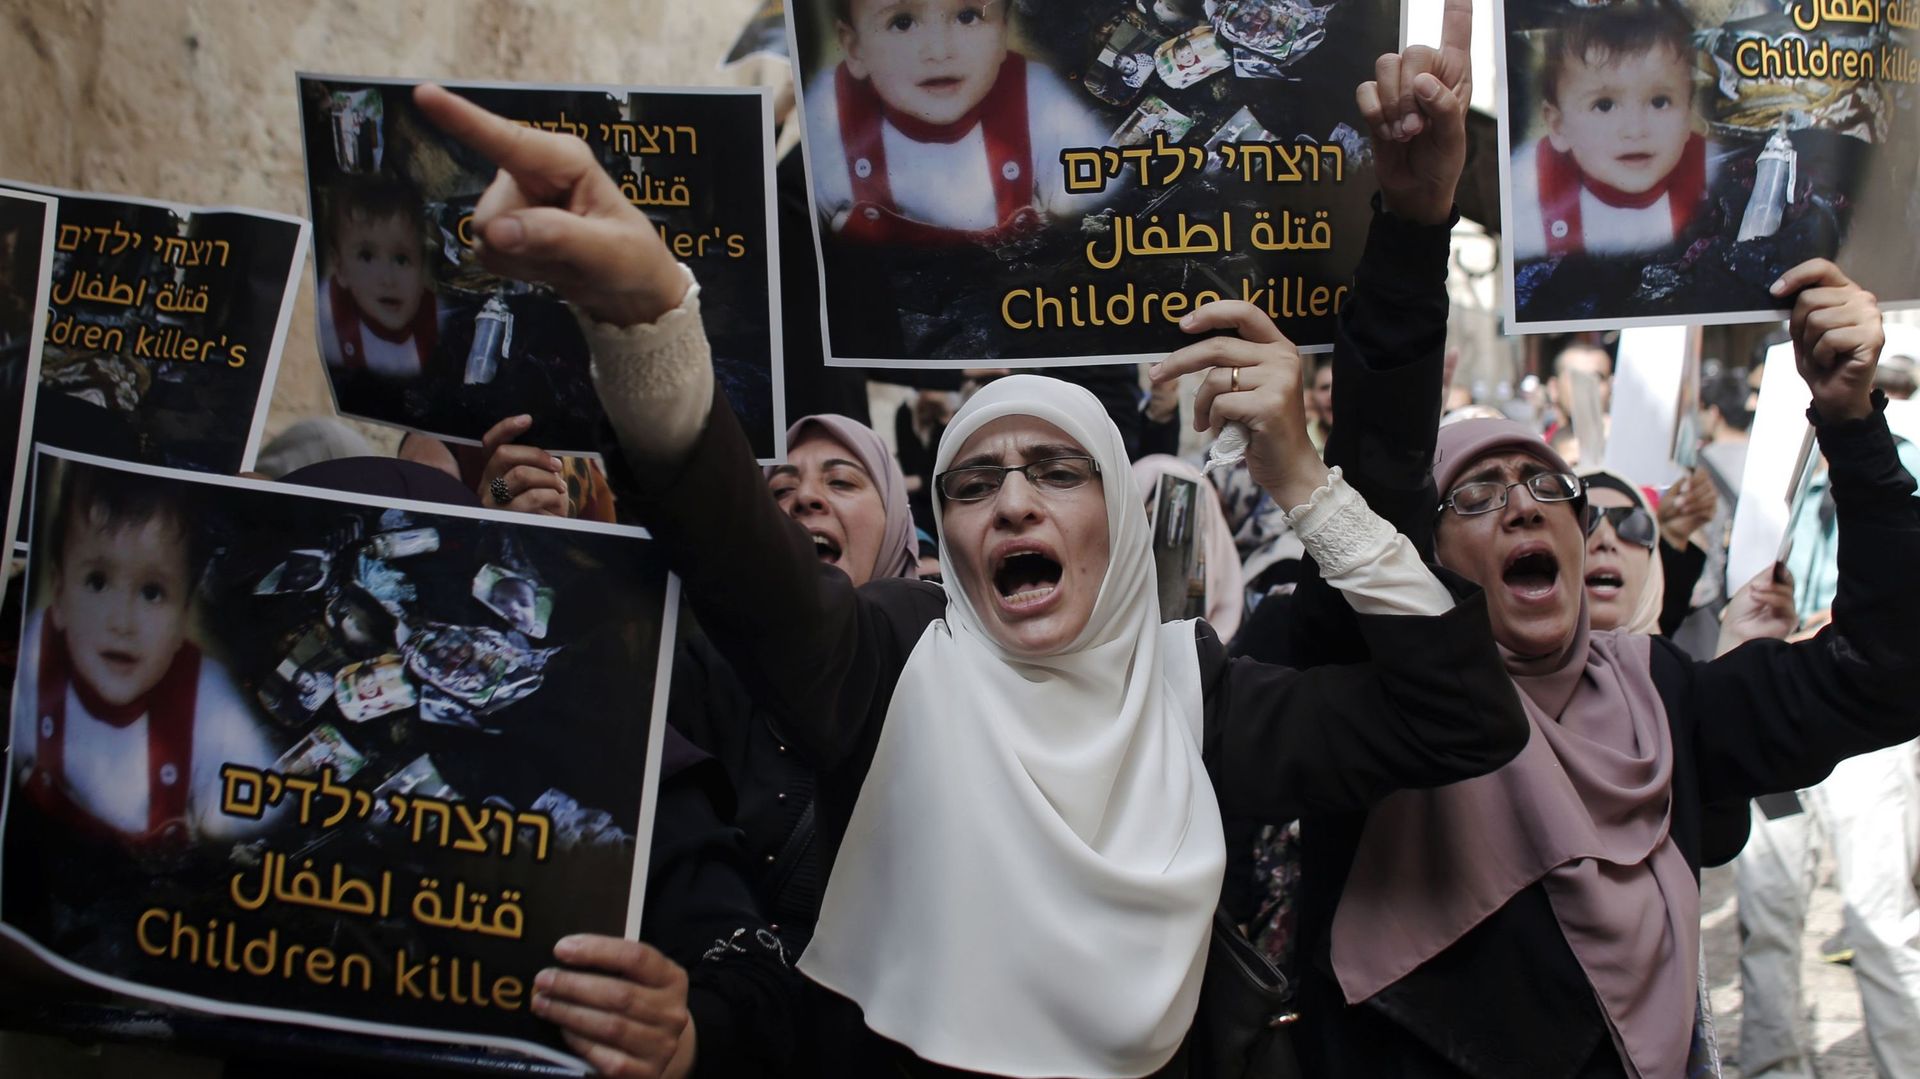 L'attentat contre une maison palestinienne qui a provoqué la mort d'un bébé de 18 mois a déclenché une vague d'indignation 